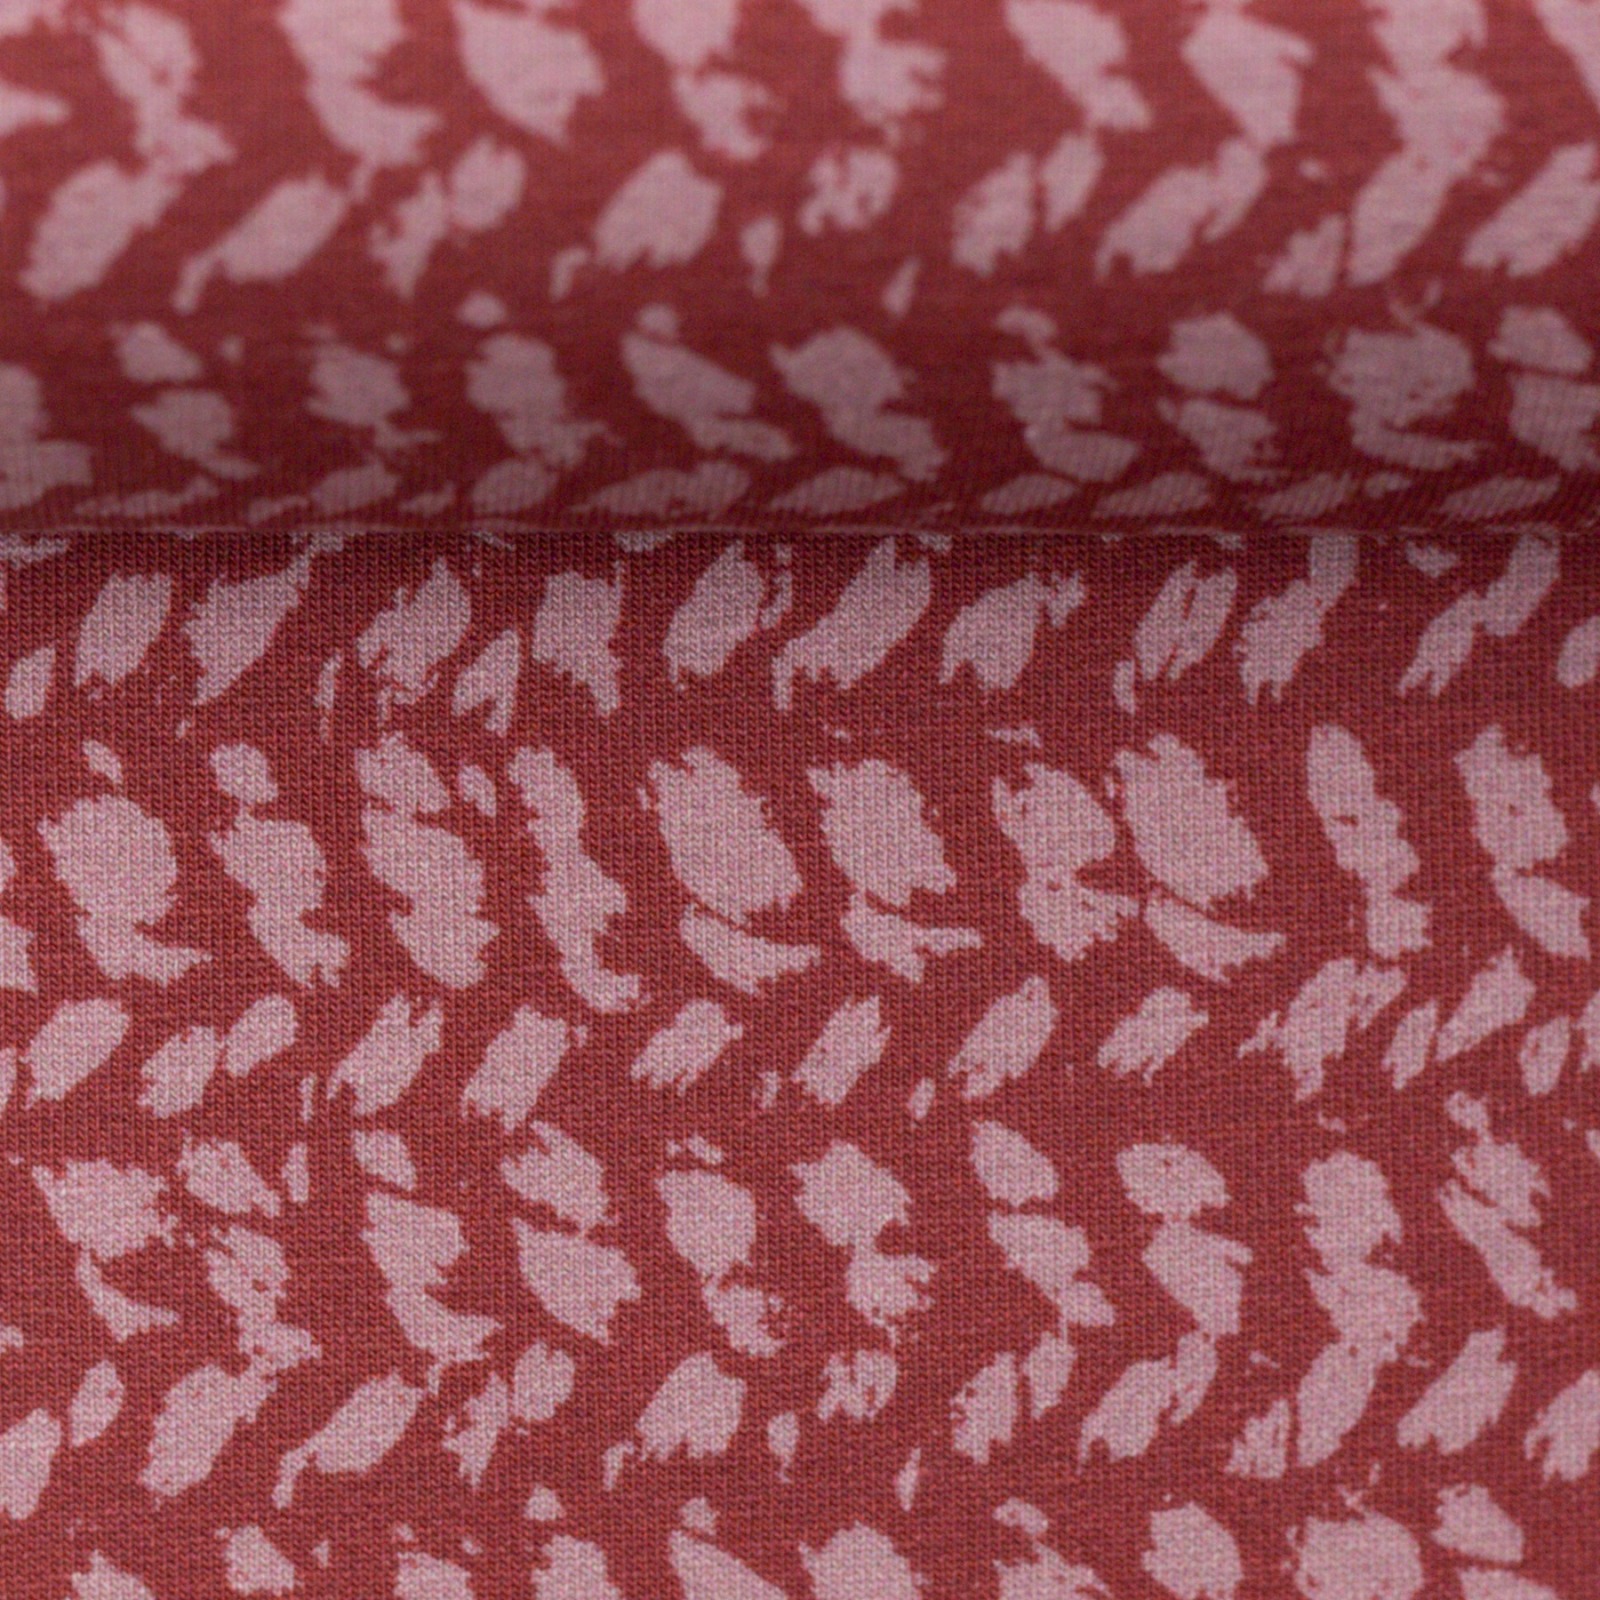 05m Sweat Herringbone Knit by Käselotti dusty Red 2